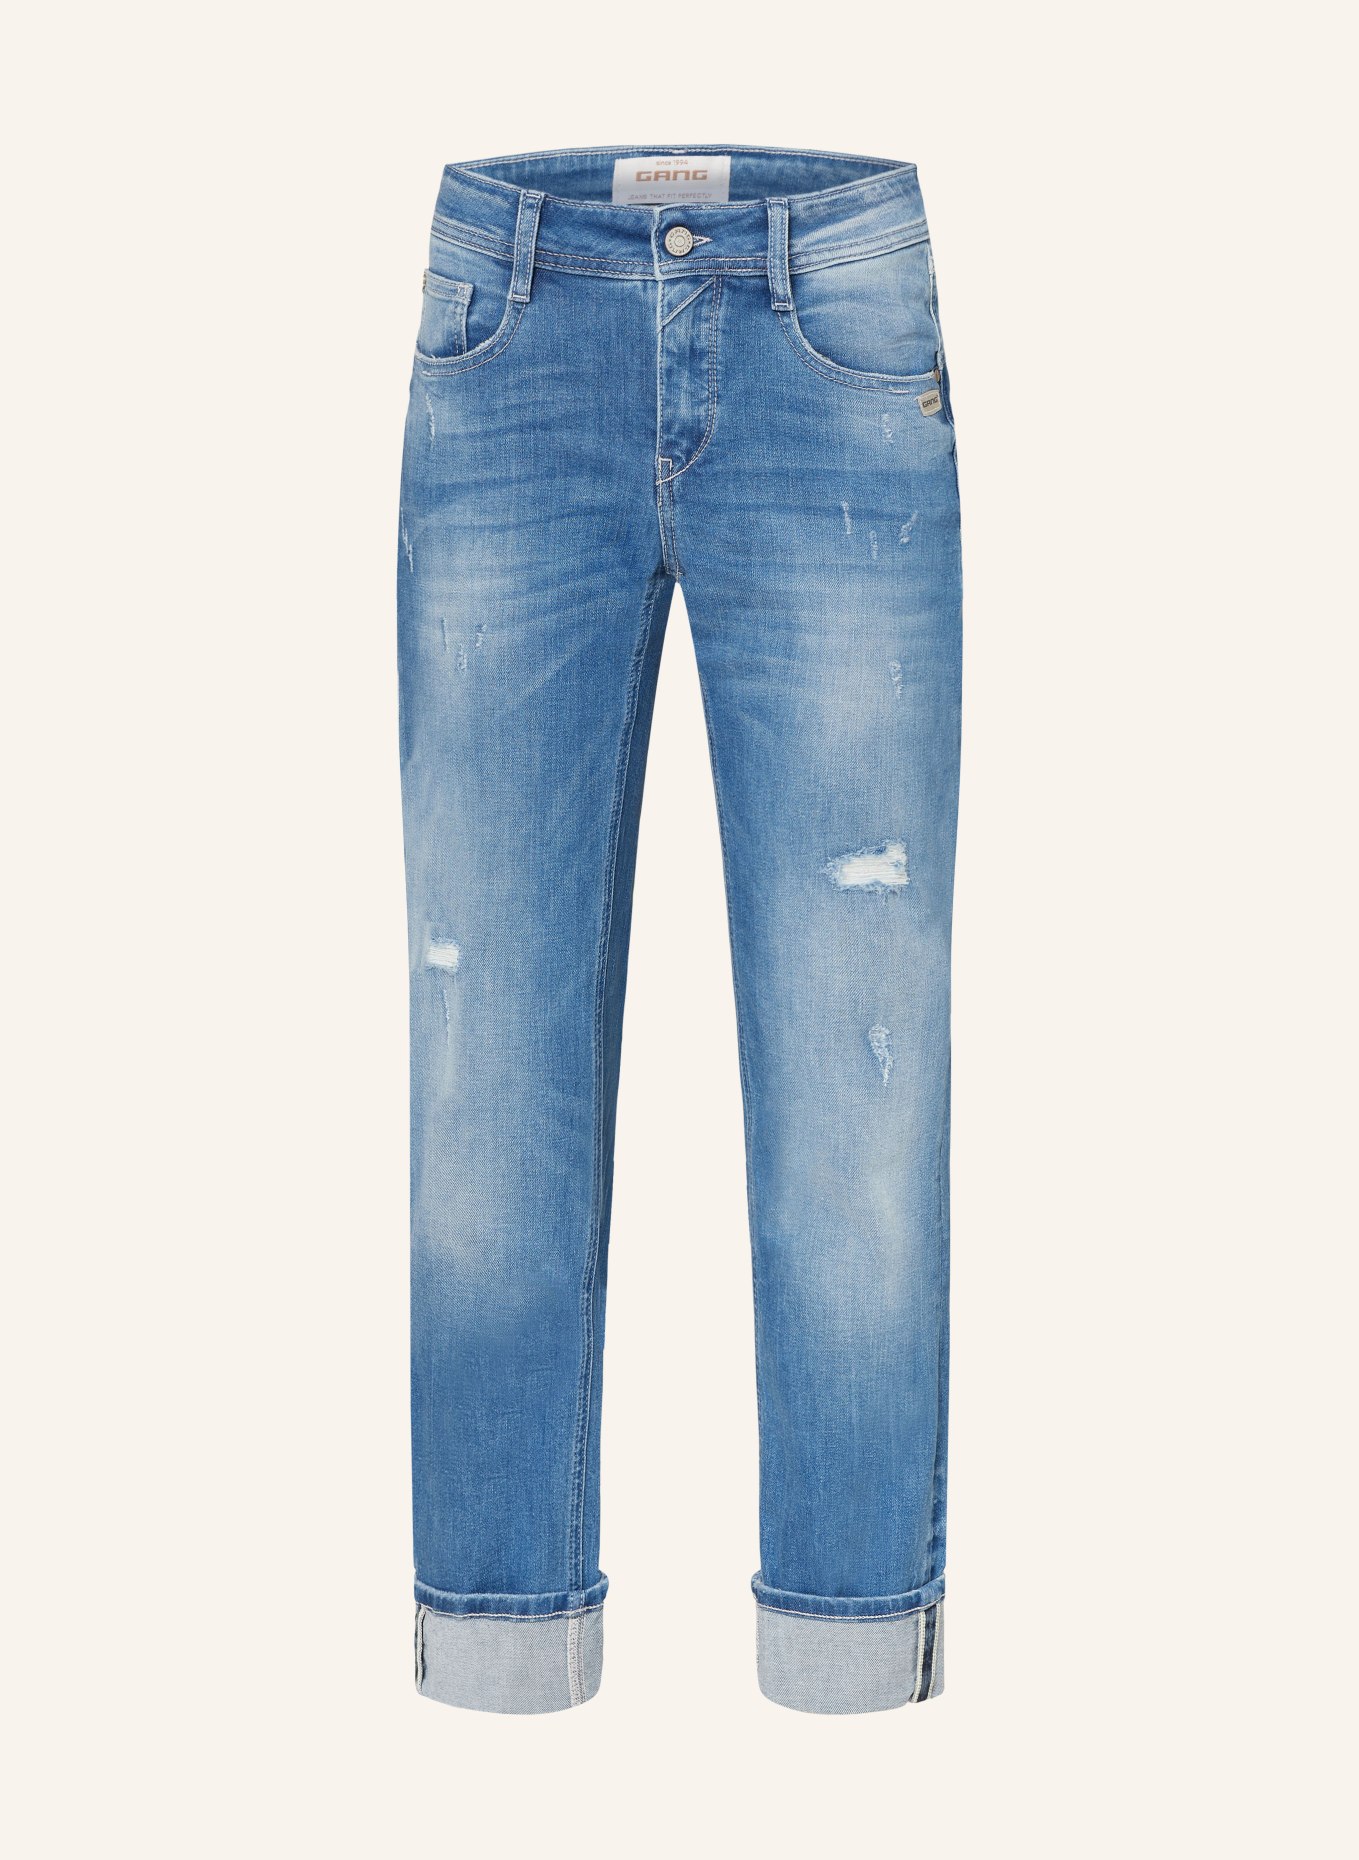 GANG Jeans AMELIE, Color: 7699 lovly destoxed (Image 1)